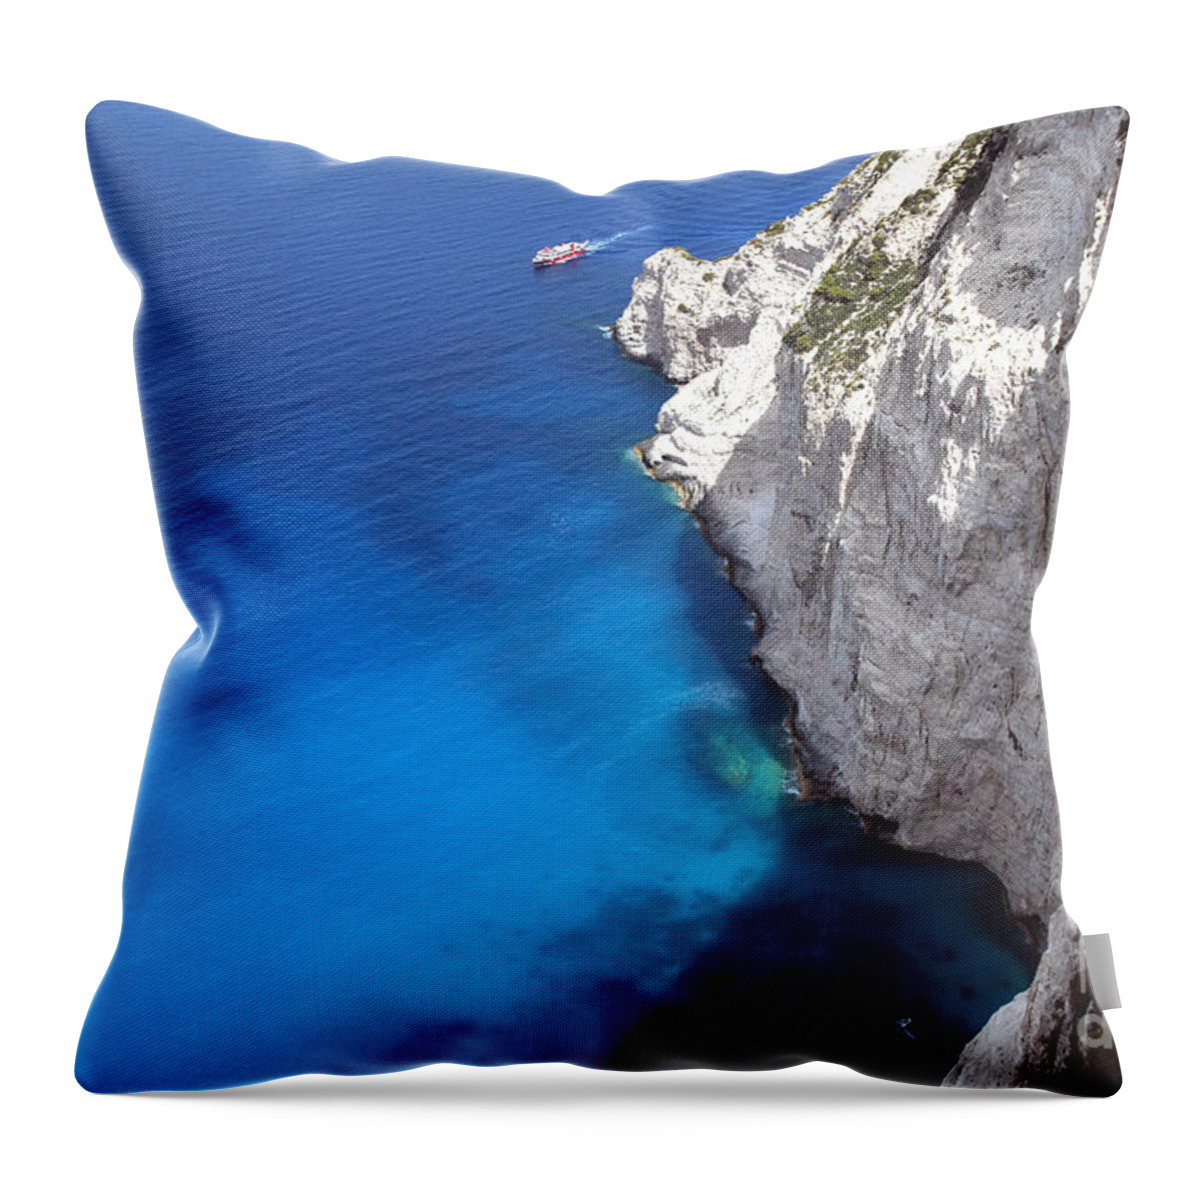 Greece Throw Pillow featuring the photograph Coast #1 by Milena Boeva